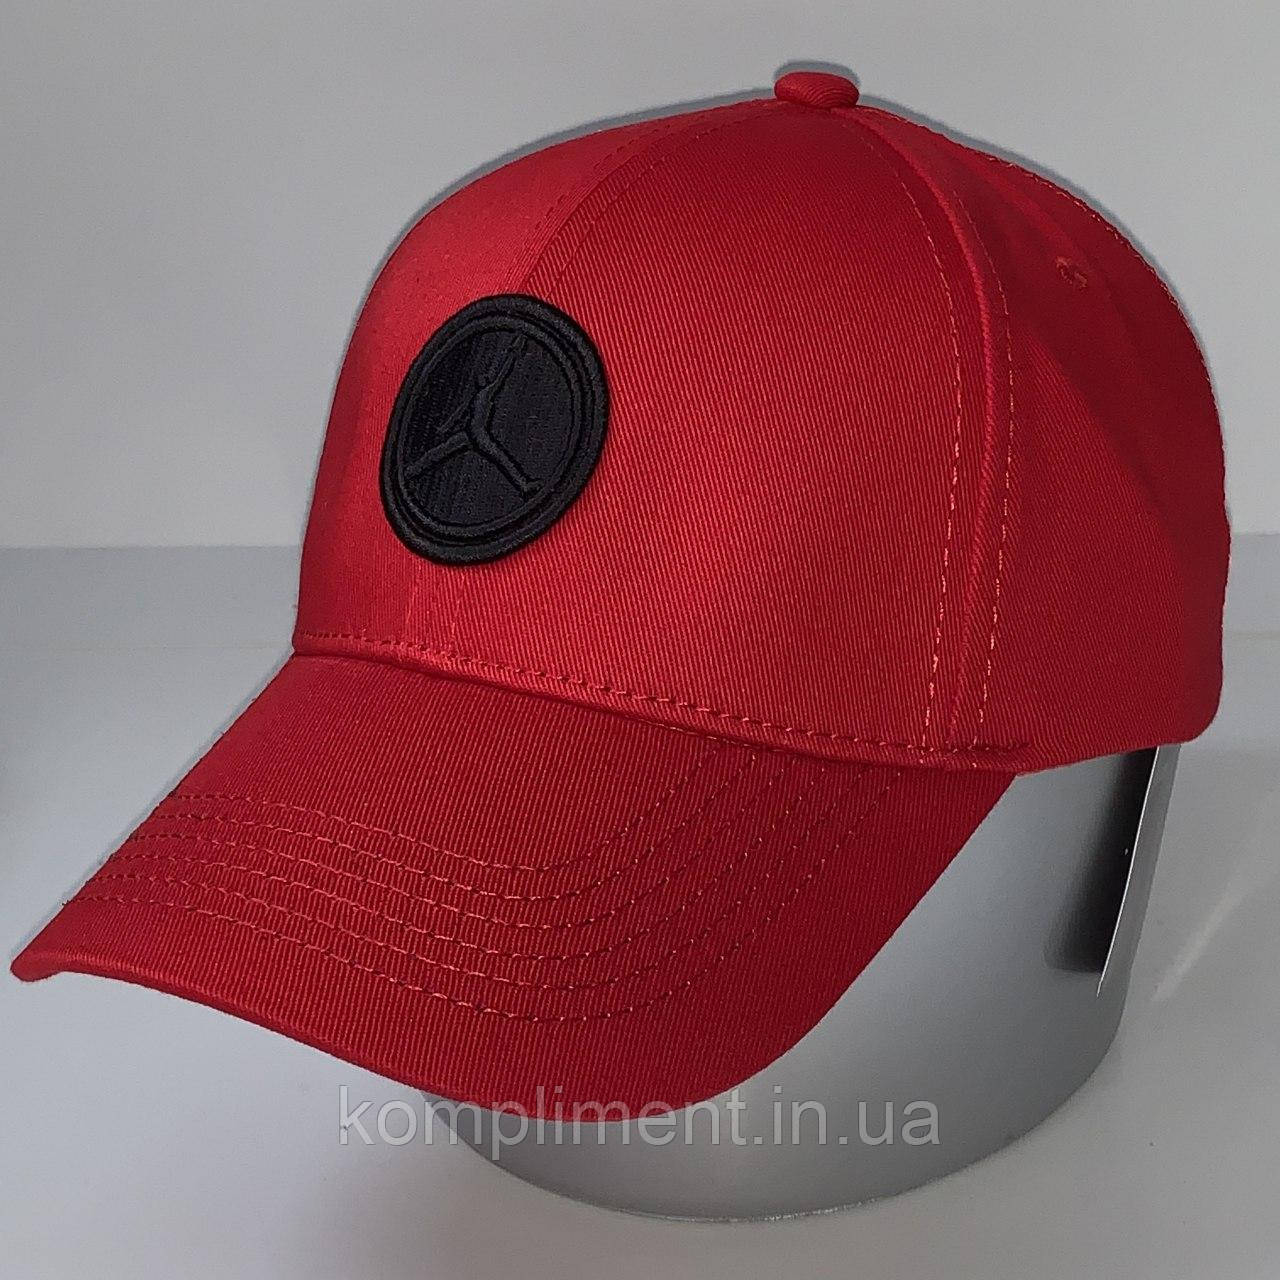 

Спортивная хлопковая мужская кепка - бейсболка с регулятором, красный VK 1148